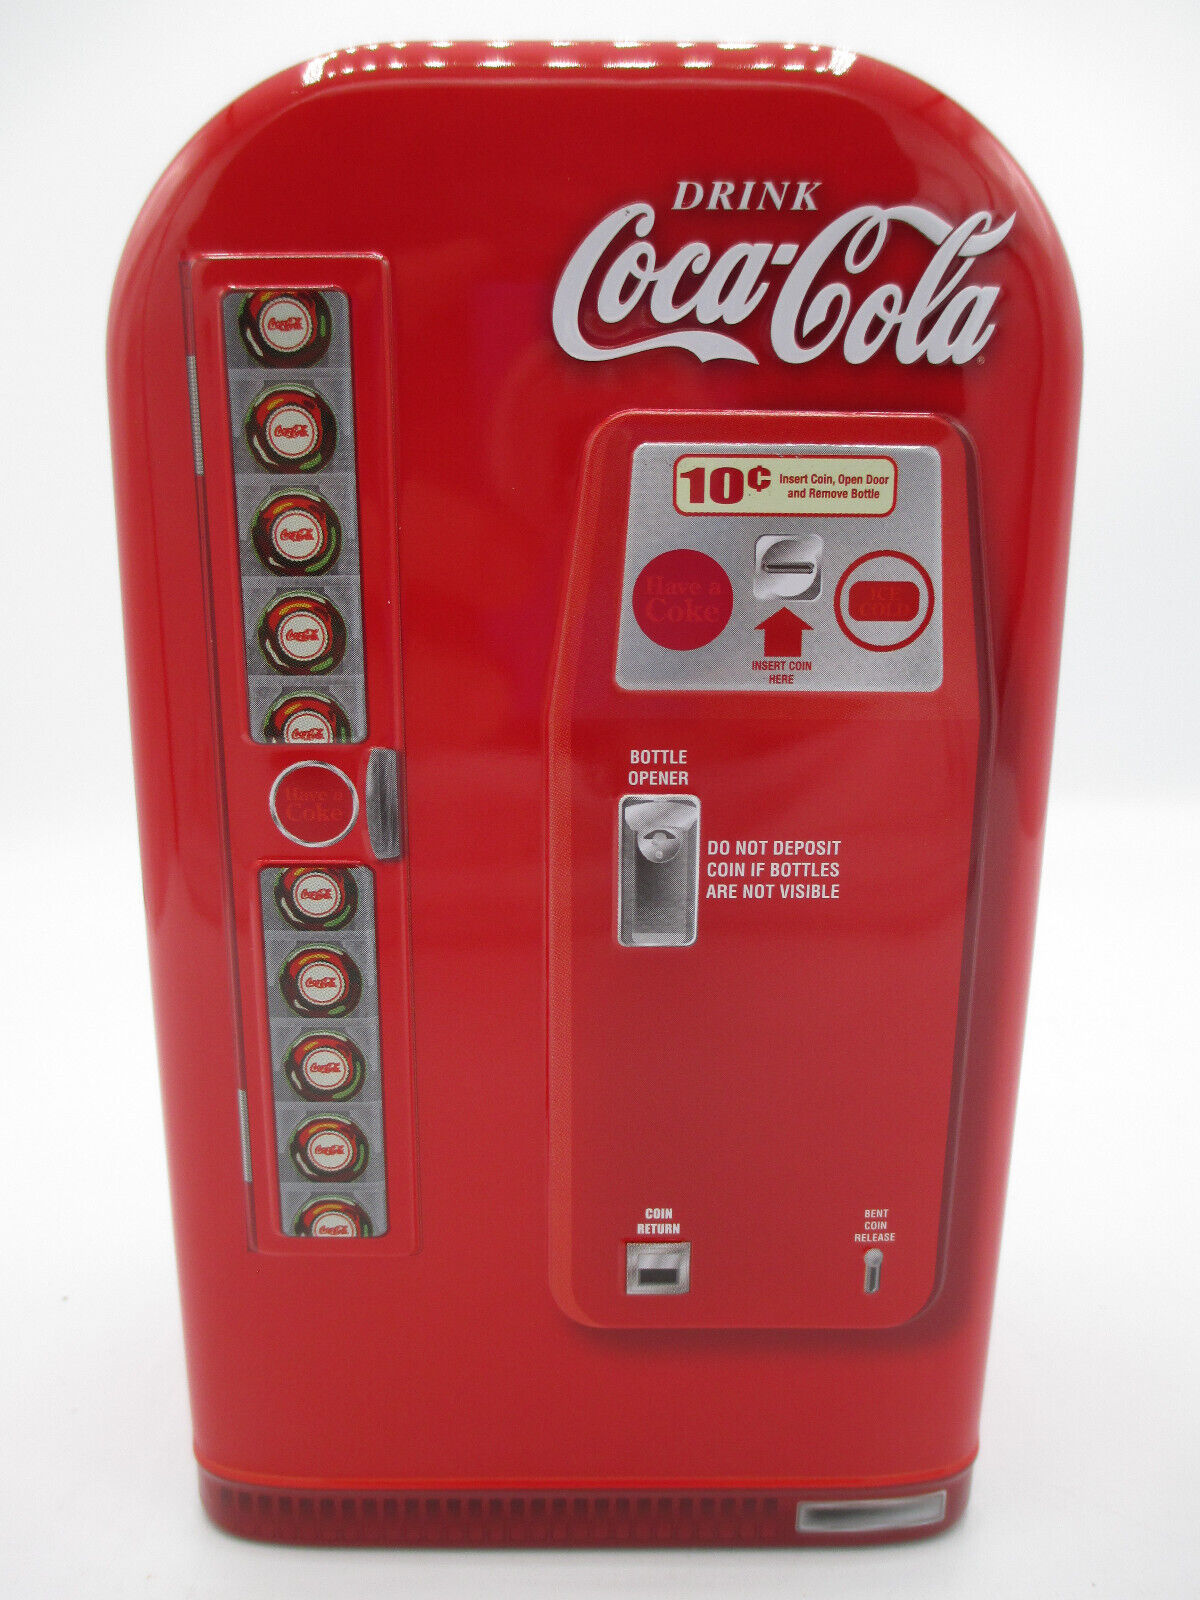 Primary image for Coca-Cola Vending Machine Tin Bank Red Drink Coca-Cola Coke Retro